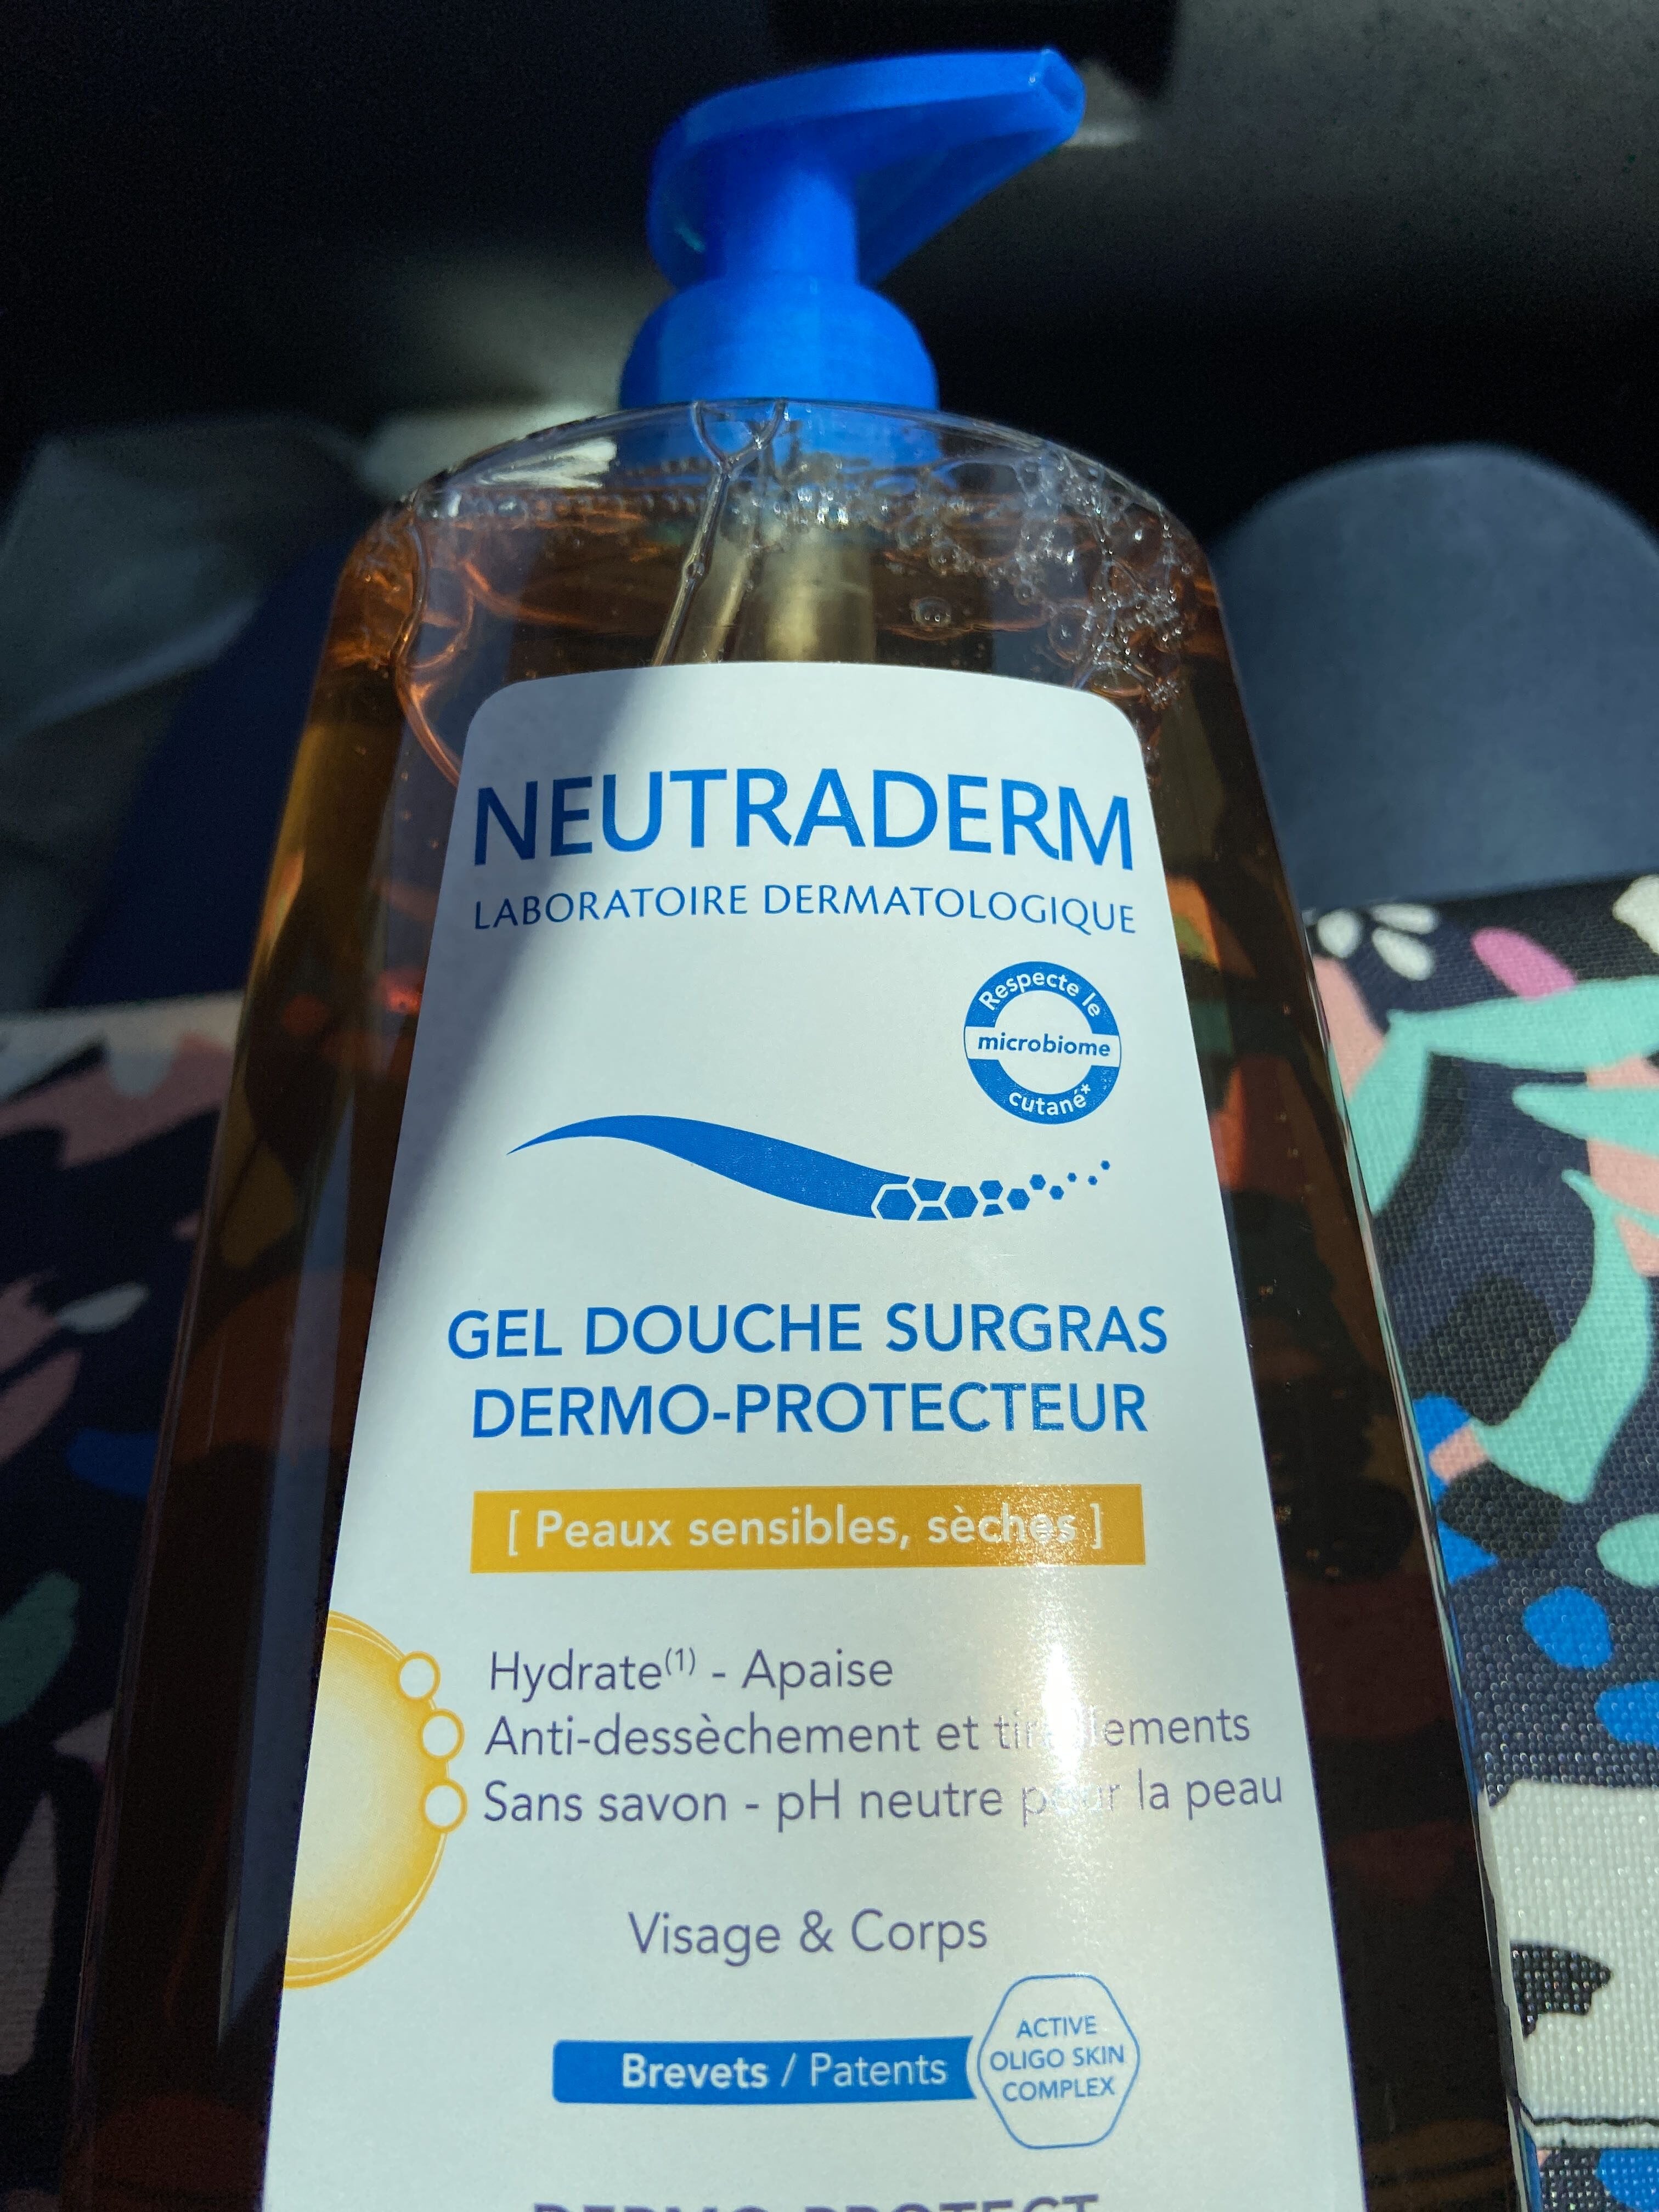 Neutraderm Gel Douche Surgras Dermo-protecteur. FL - Product - fr